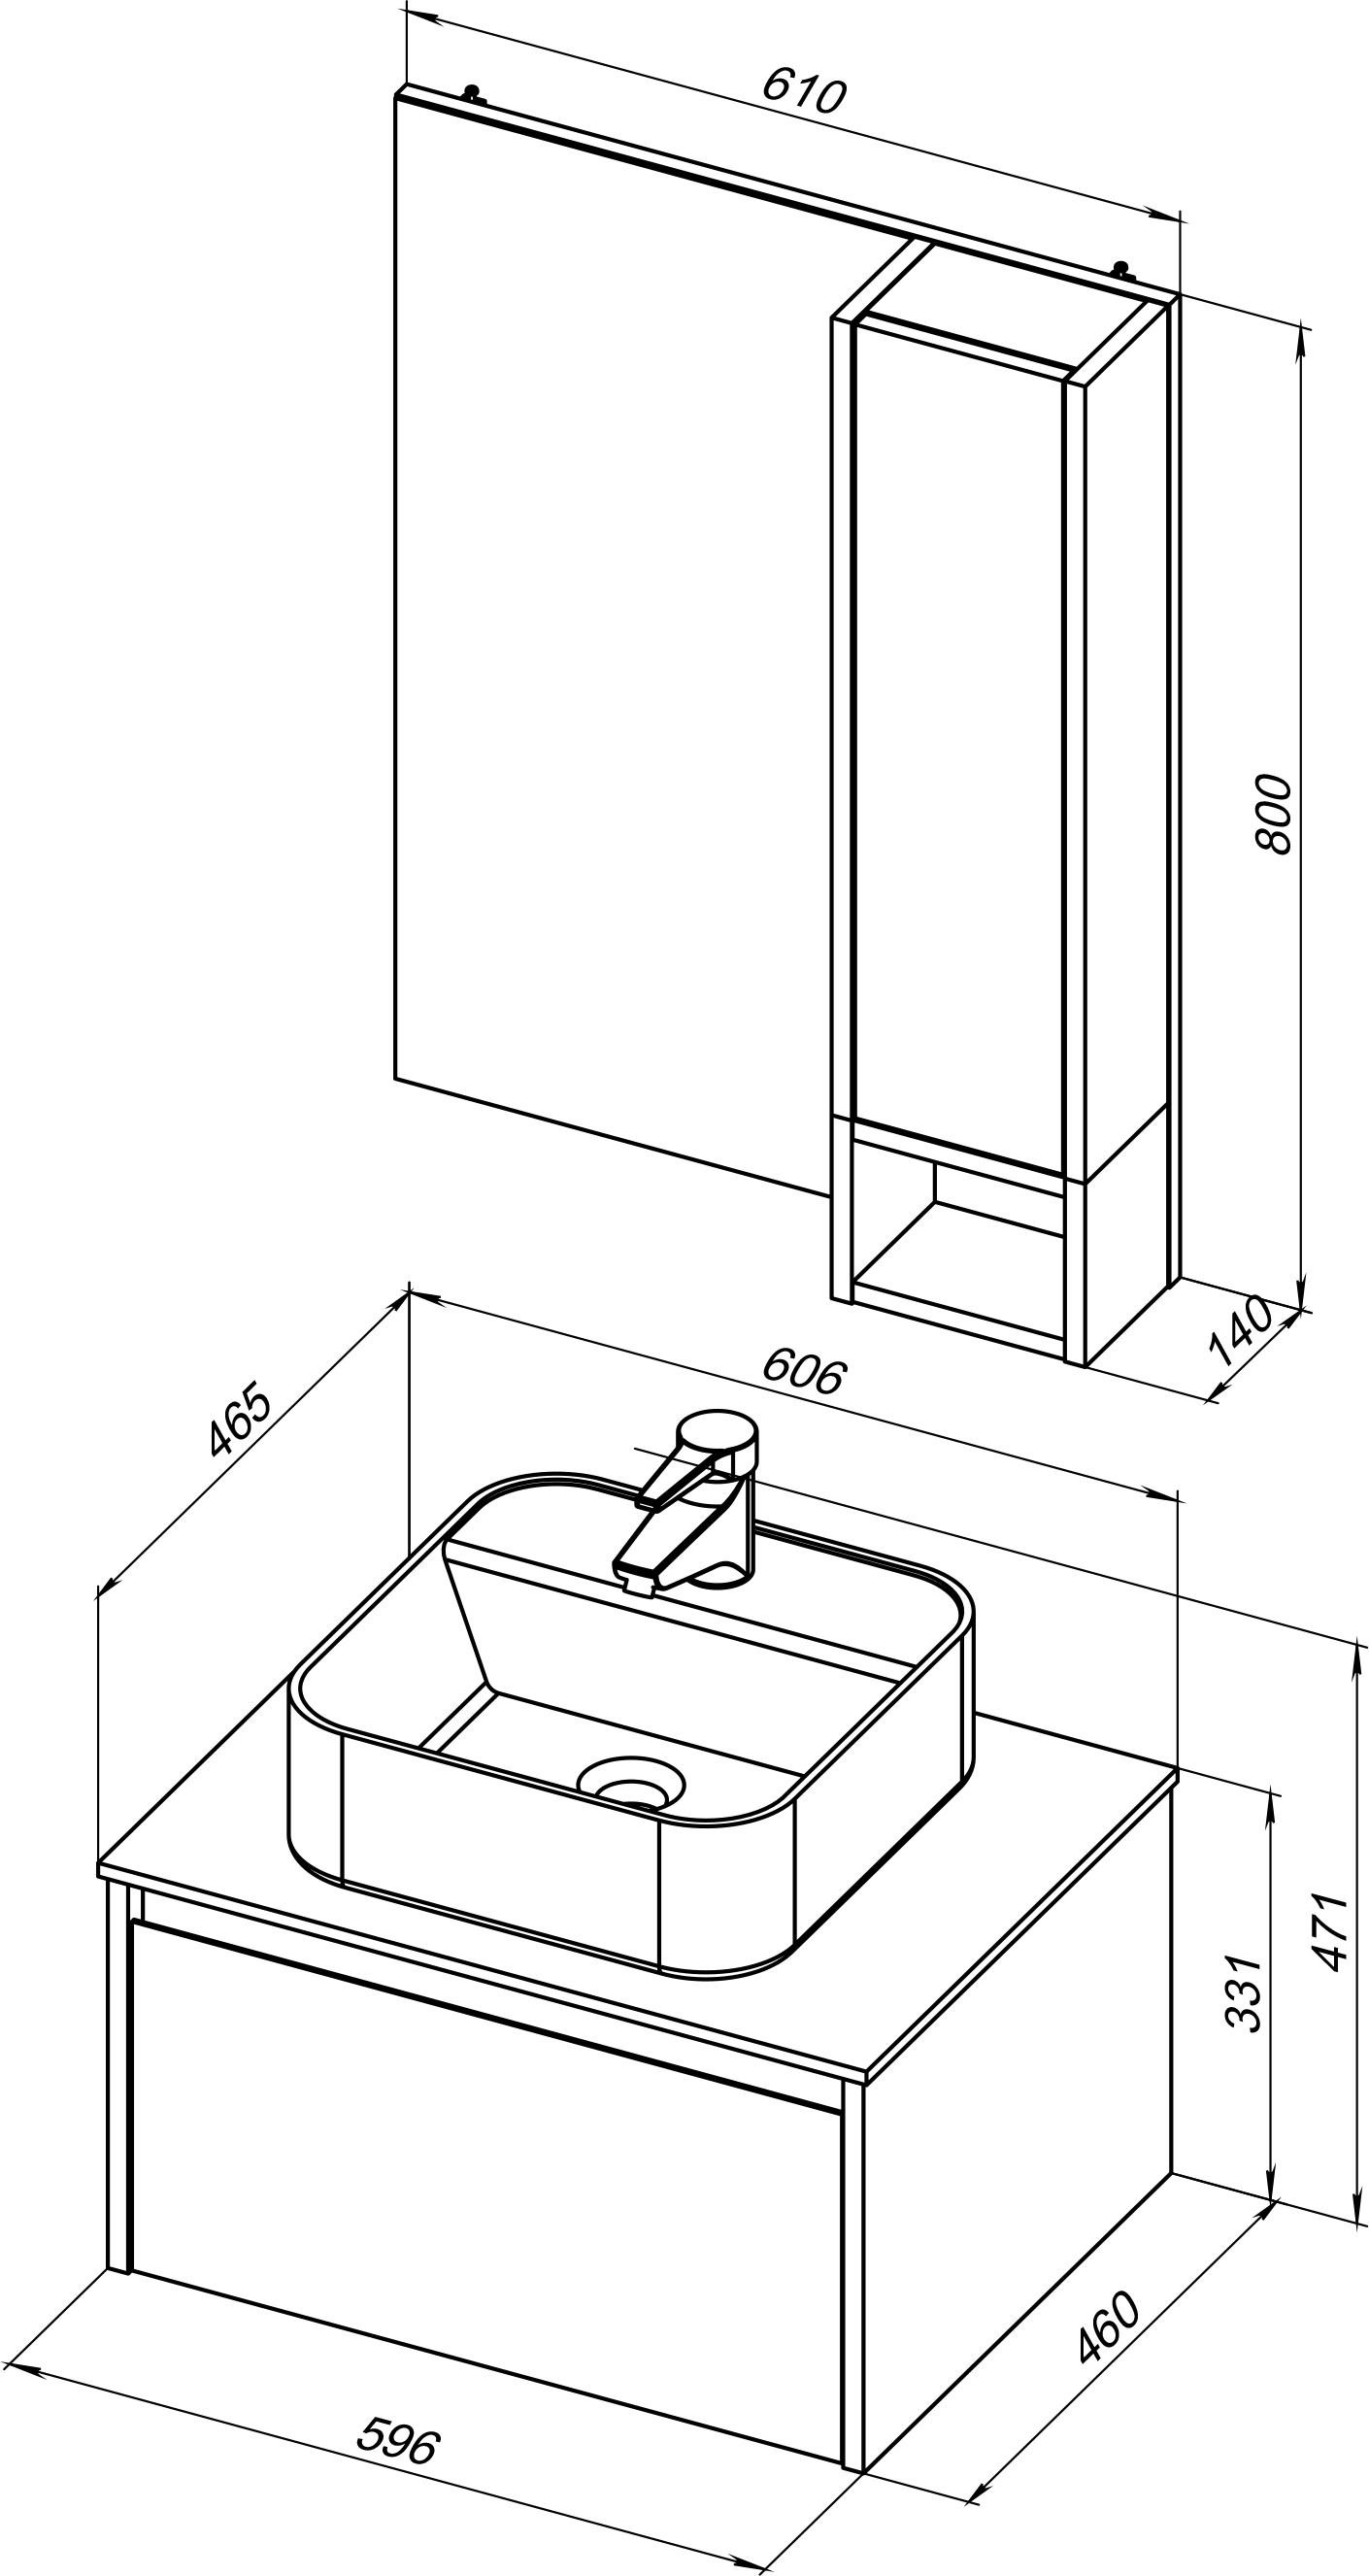 Мебель для ванной STWORKI Карлстад 60 дуб рустикальный, ровереллав стиле лофт, под дерево, подвесная 427850 - 8